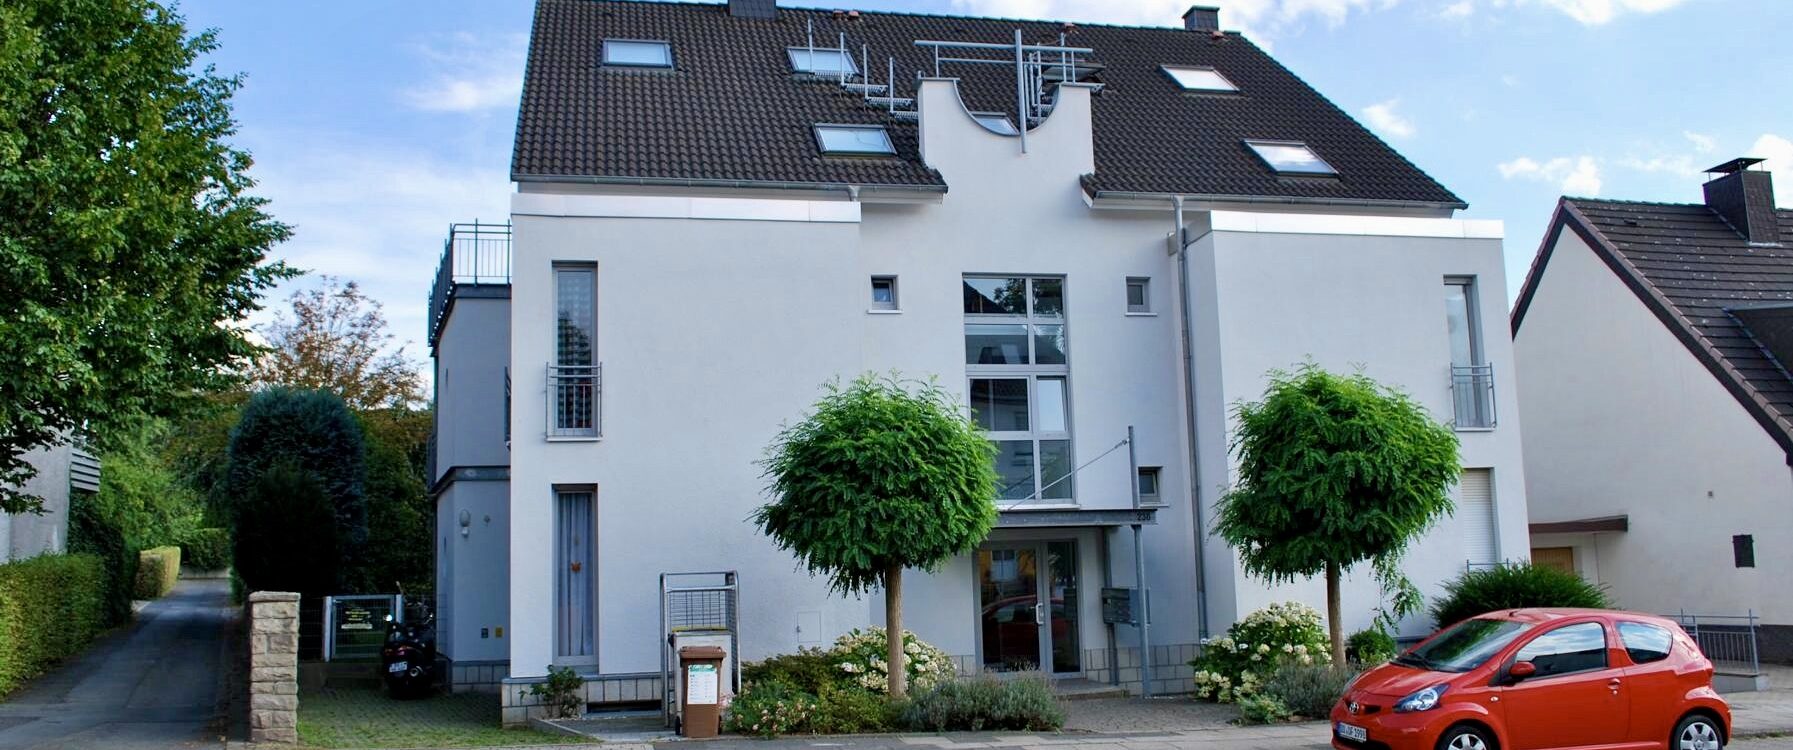 Hochwertige Erdgeschosswohnung mit Garten in Dortmund-Kirchhörde